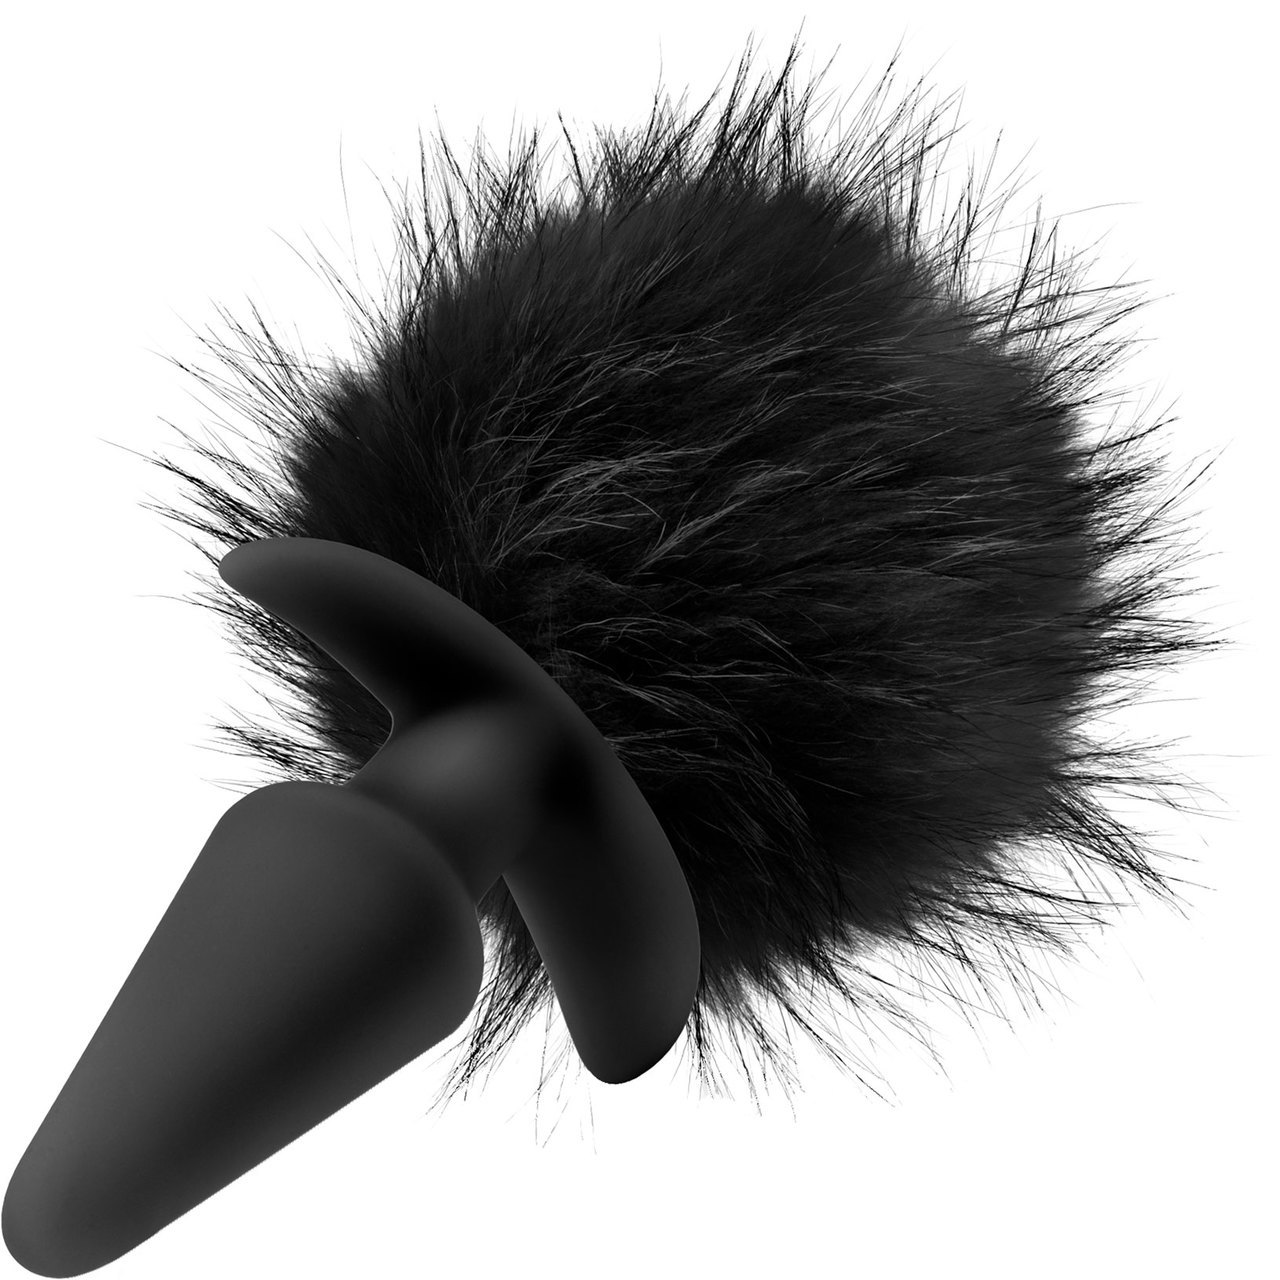 Pom Plugs Silicone Butt Plug With Fur Pom-Pom By Blush Novelties - Black